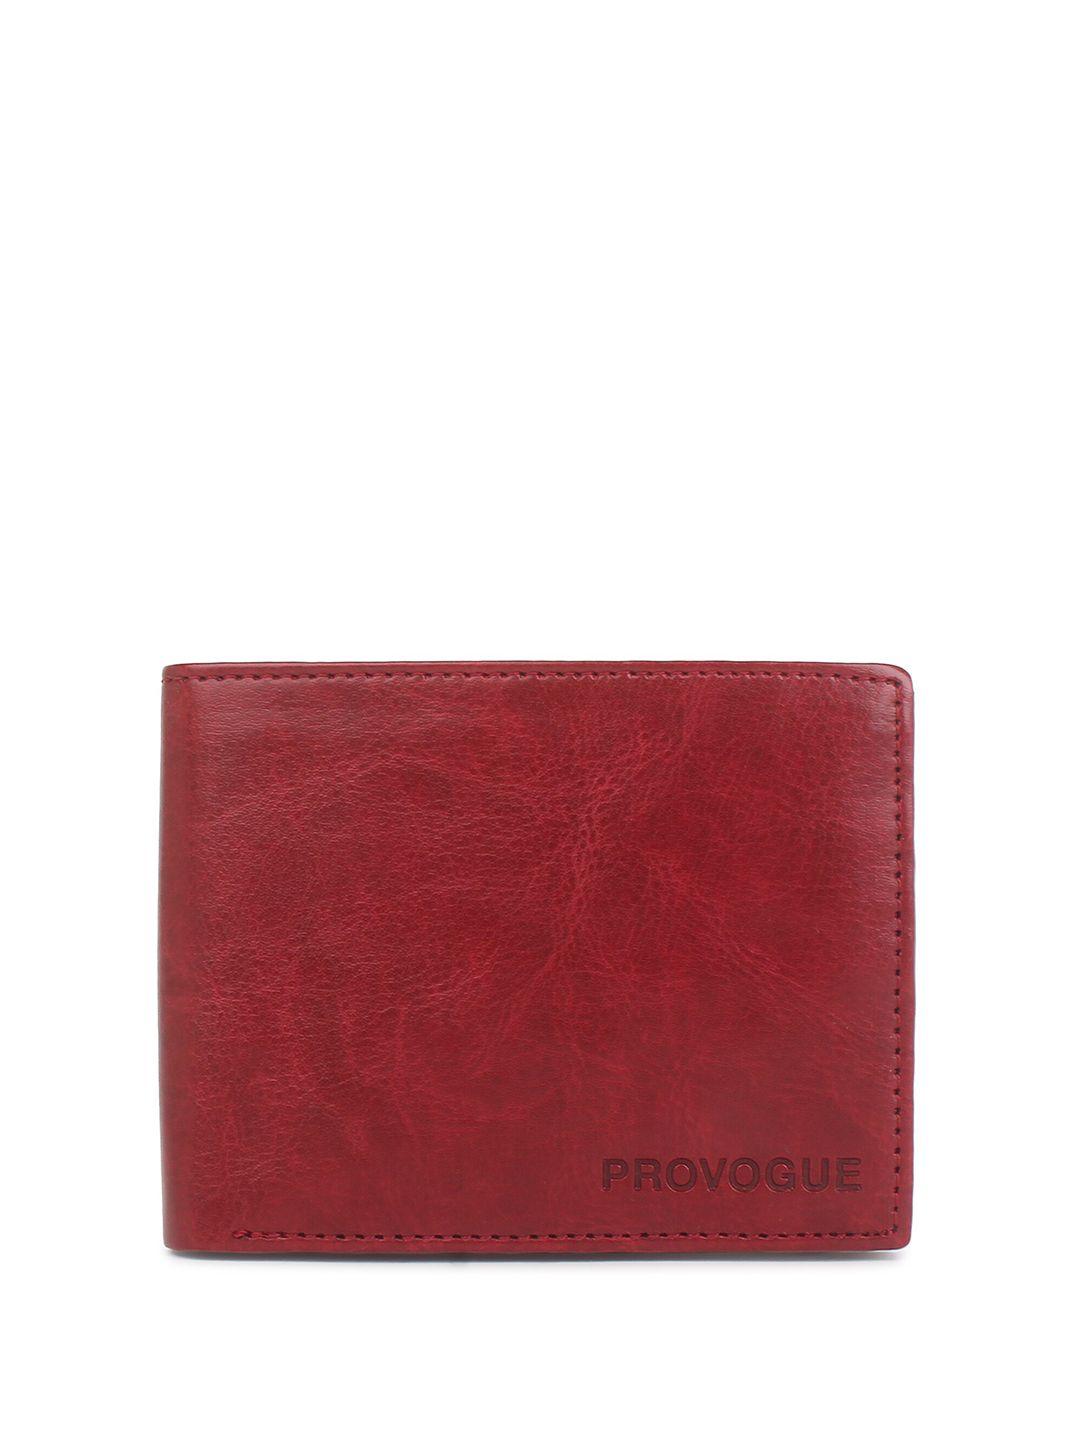 provogue men two fold wallet